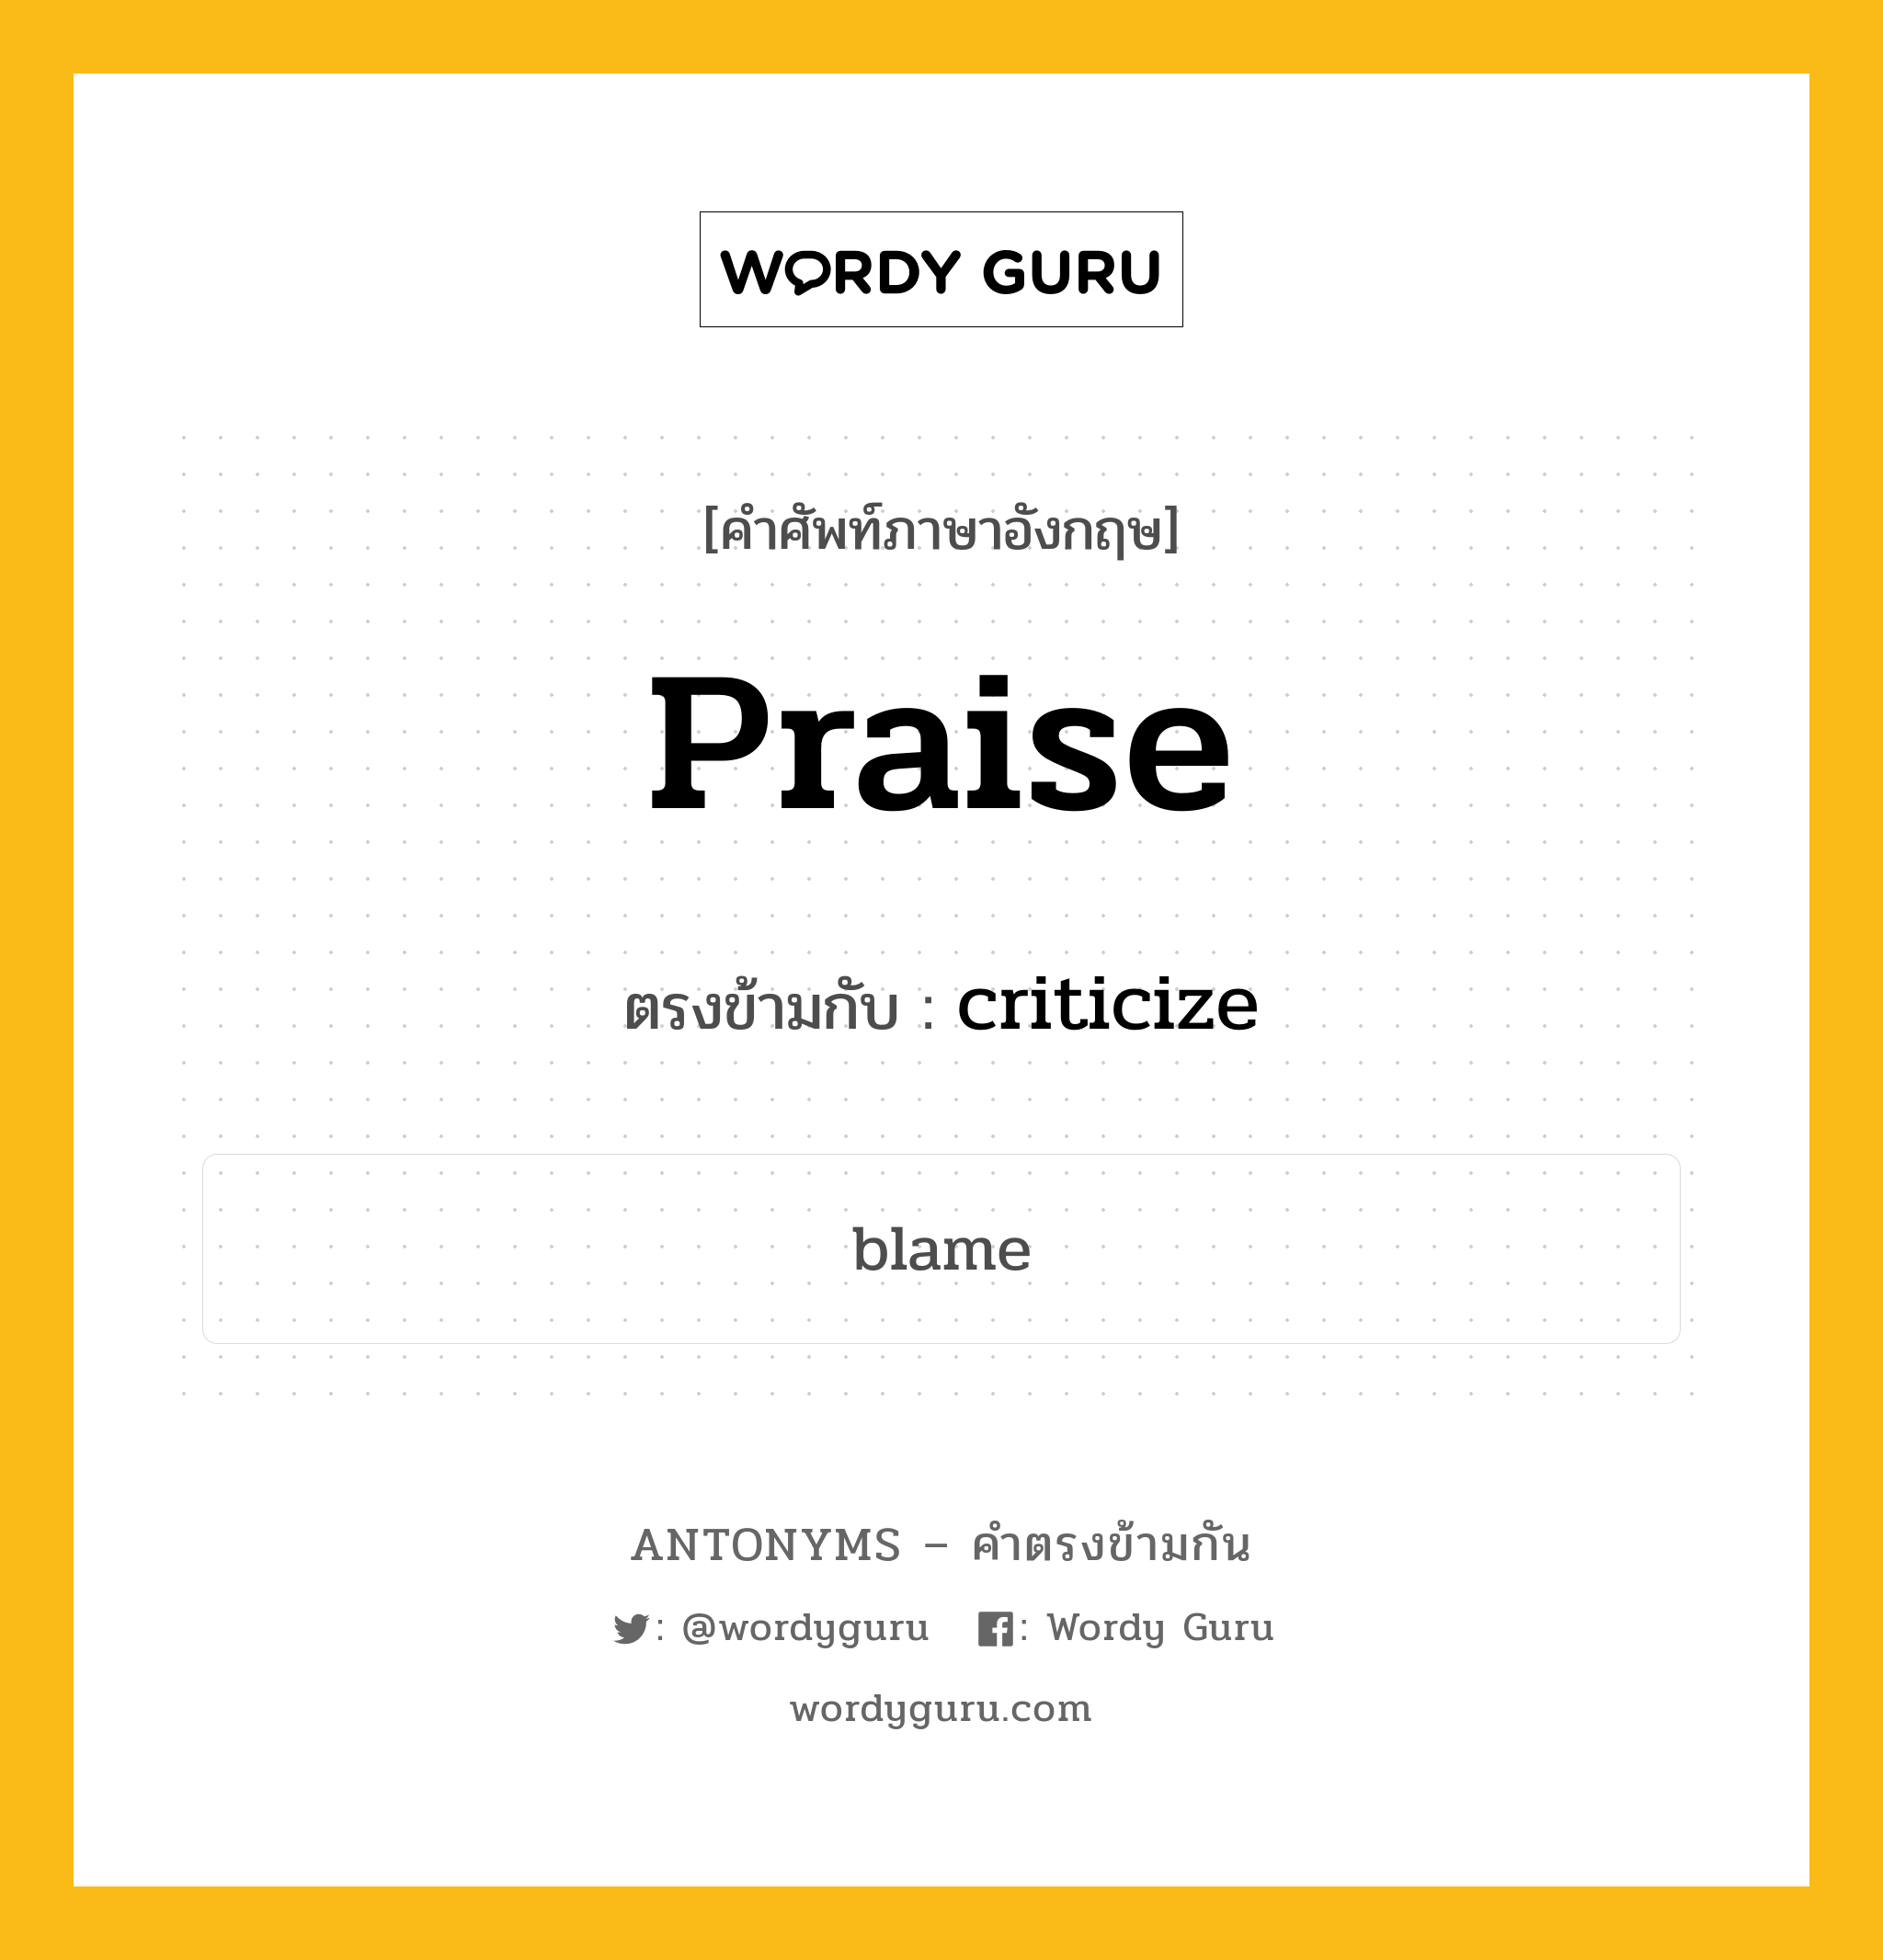 praise เป็นคำตรงข้ามกับคำไหนบ้าง?, คำศัพท์ภาษาอังกฤษ praise ตรงข้ามกับ criticize หมวด criticize